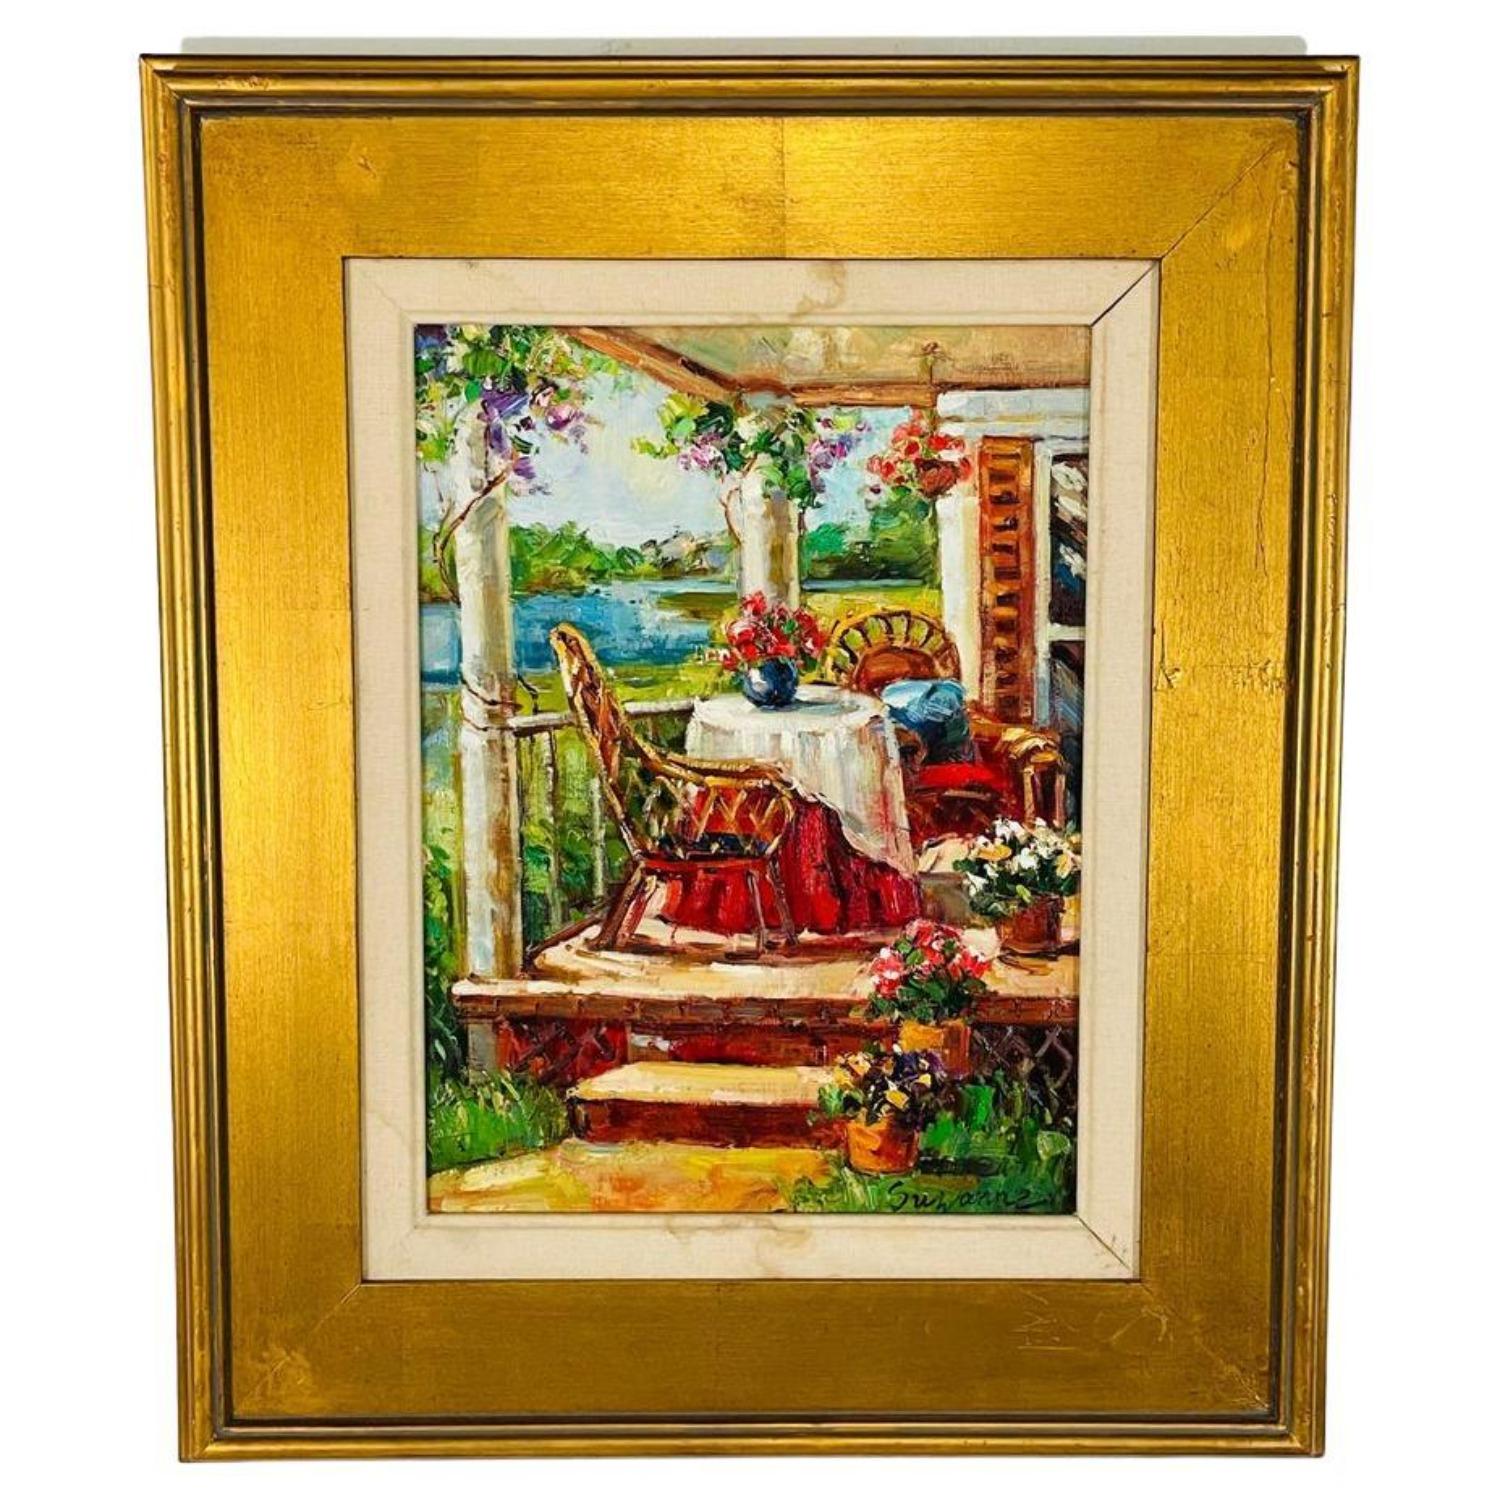 Unknown Landscape Painting – Ölgemälde auf Leinwand von Künstler in vergoldetem Rahmen, Gemälde einer Wohnungstür, signiert